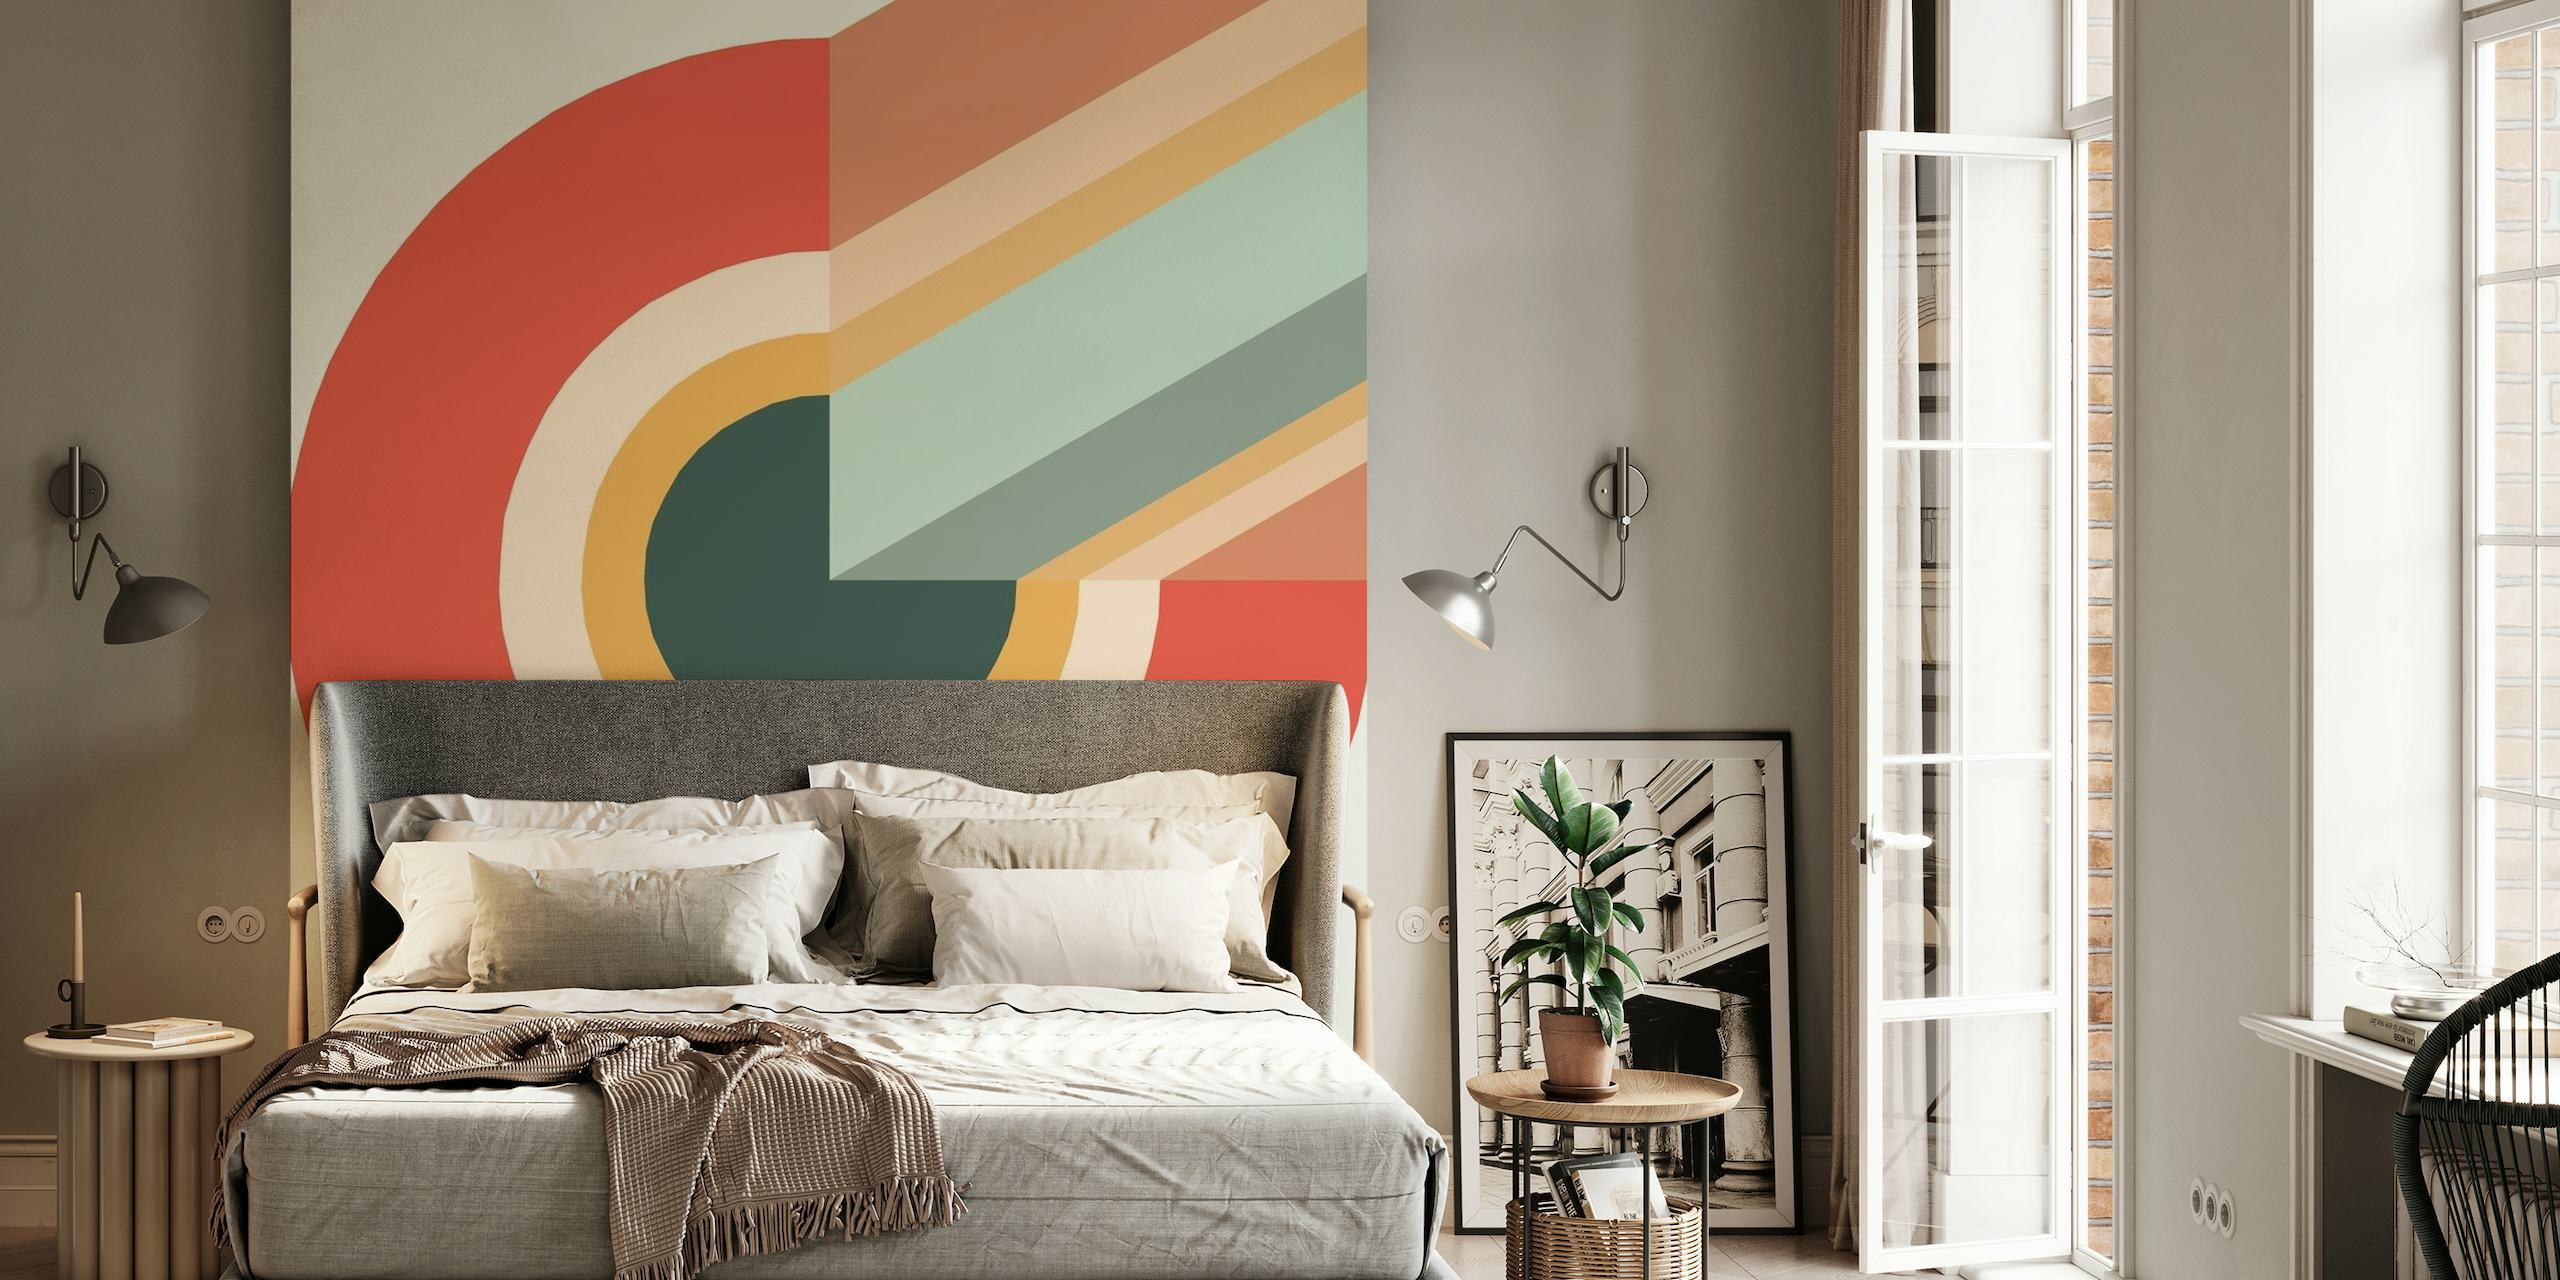 Abstract swirl fotobehang met een harmonieuze mix van warme en koele kleuren